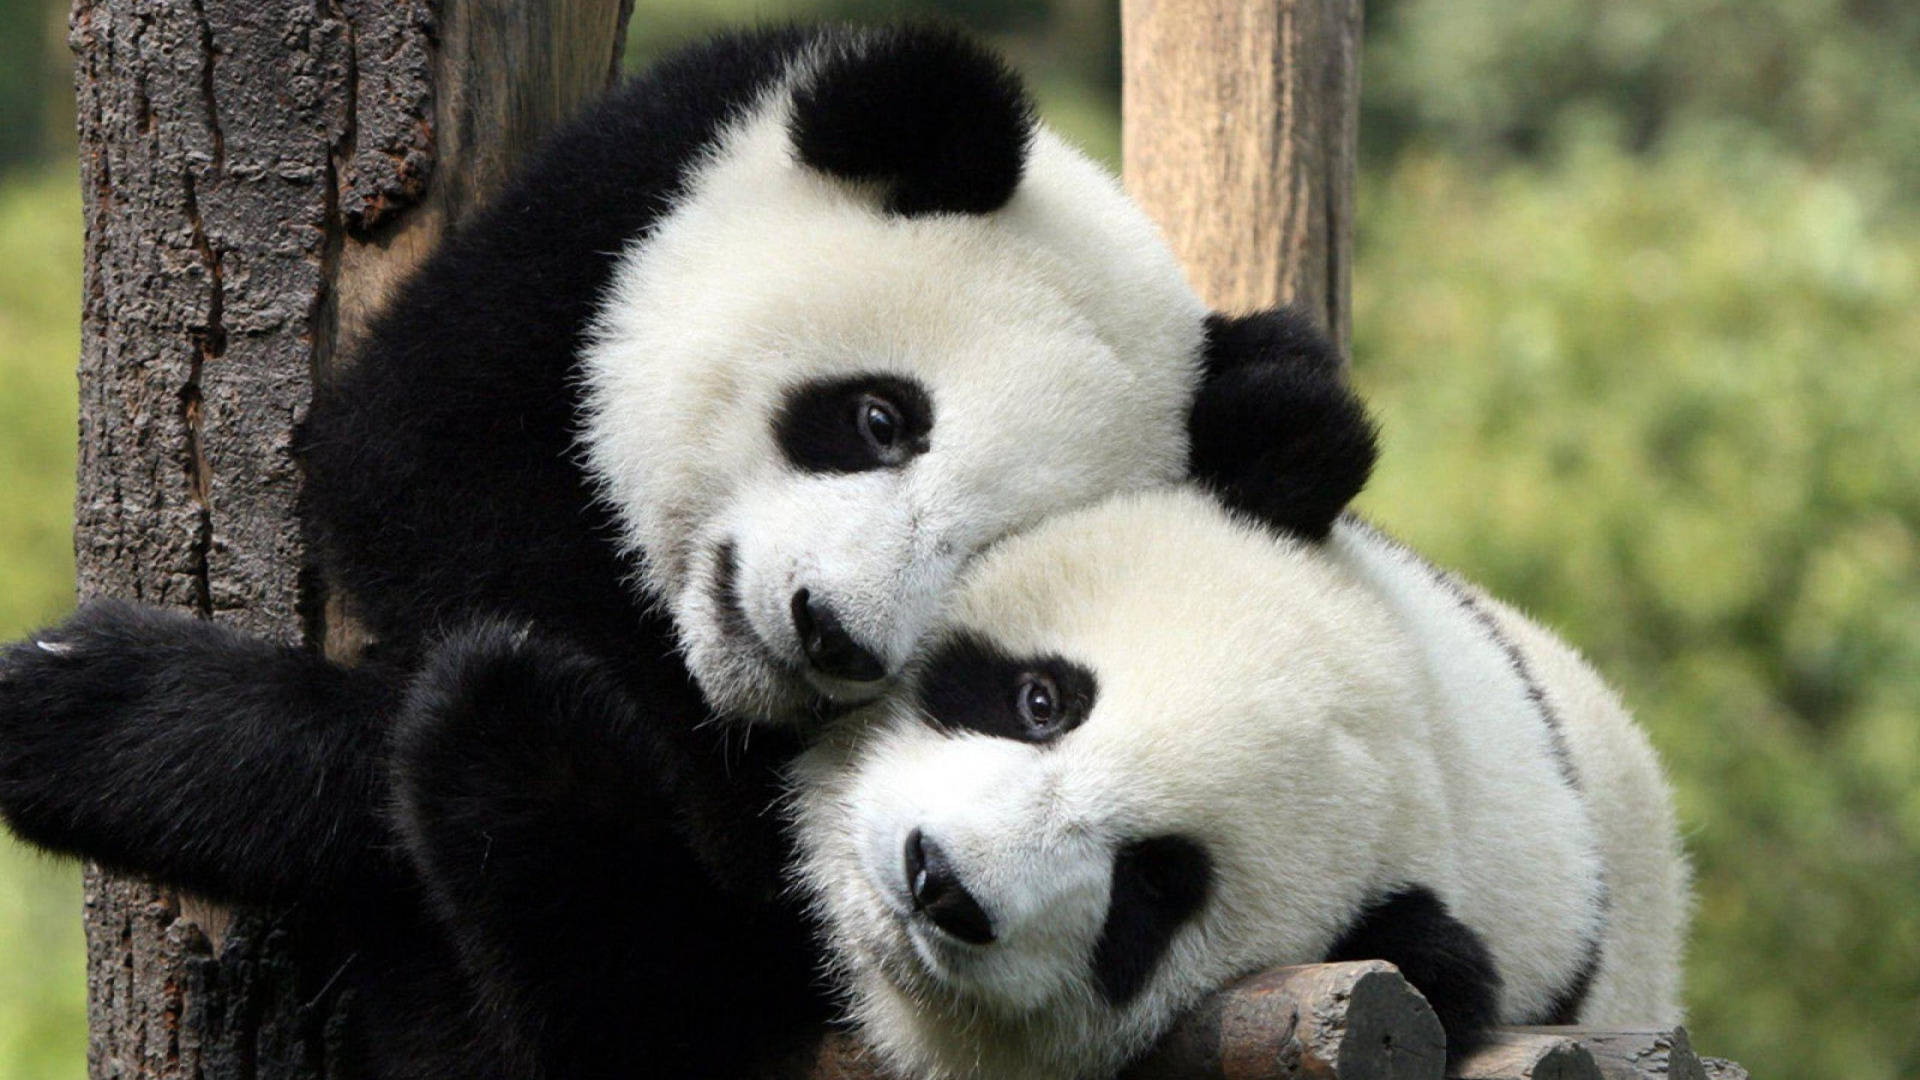 Cool Cute Pandas Hugging Each Other Wallpaper